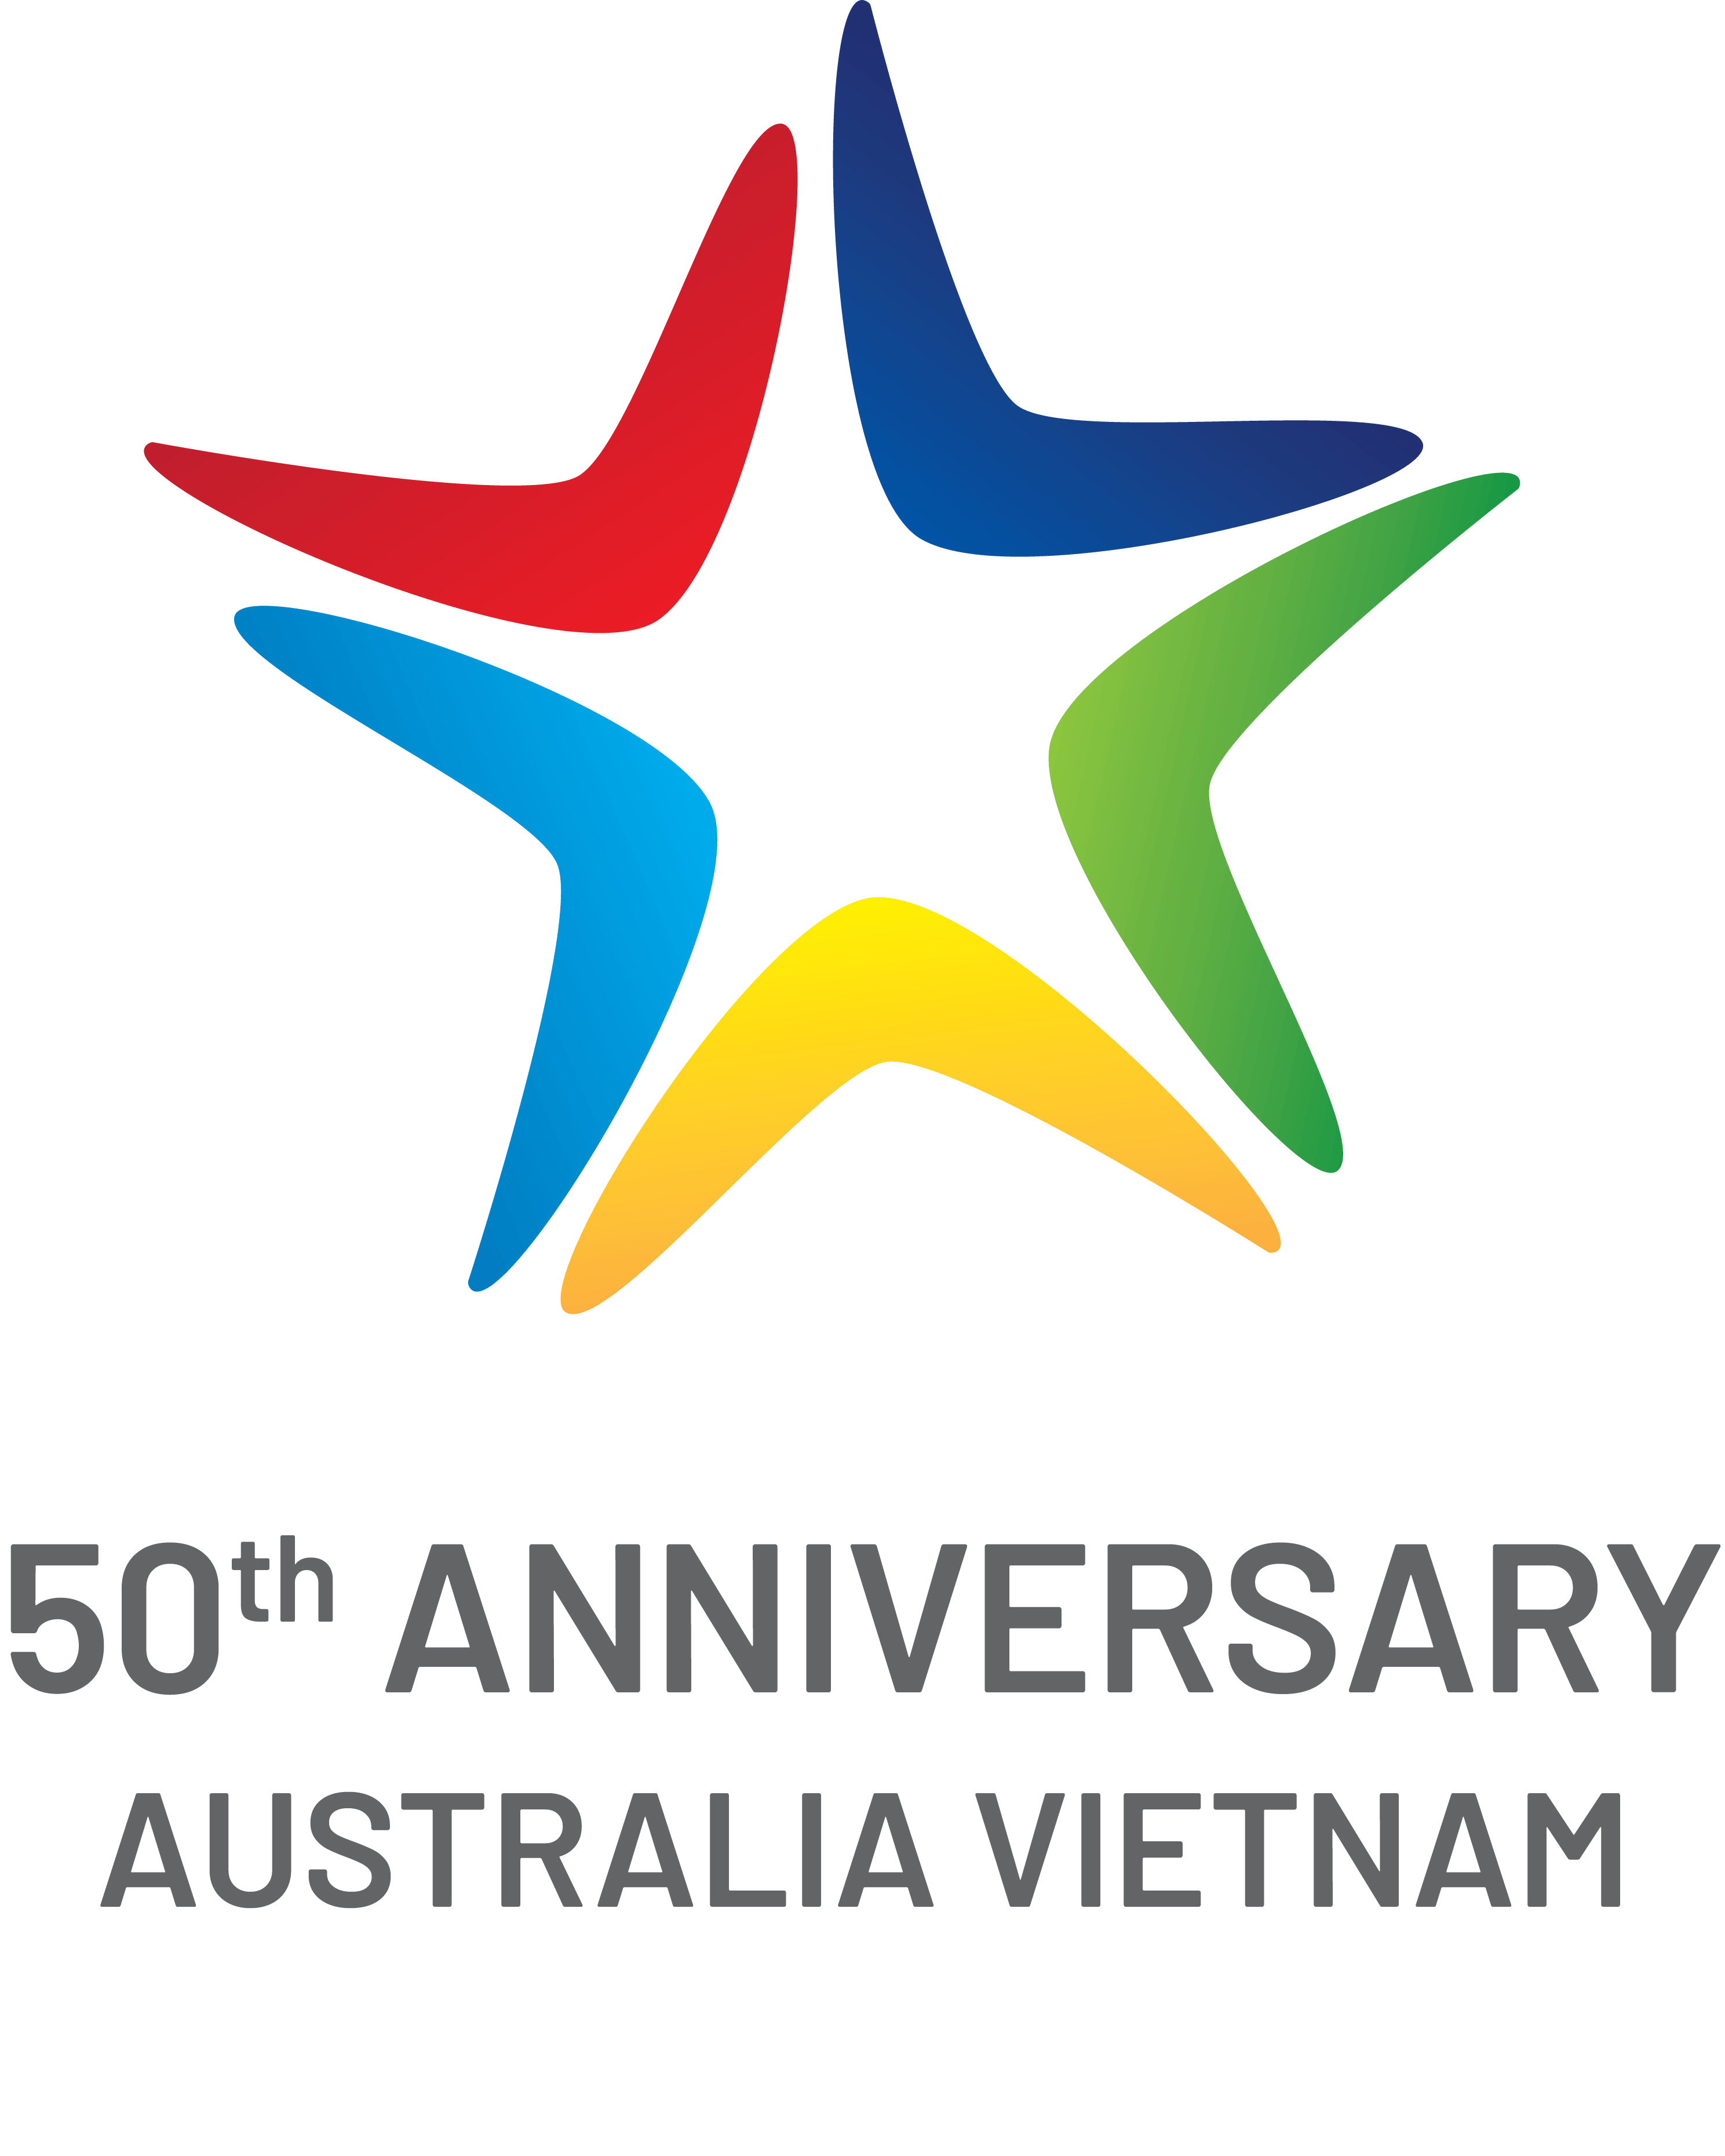 Công bố logo kỷ niệm 50 năm thiết lập quan hệ ngoại giao Việt Nam ...